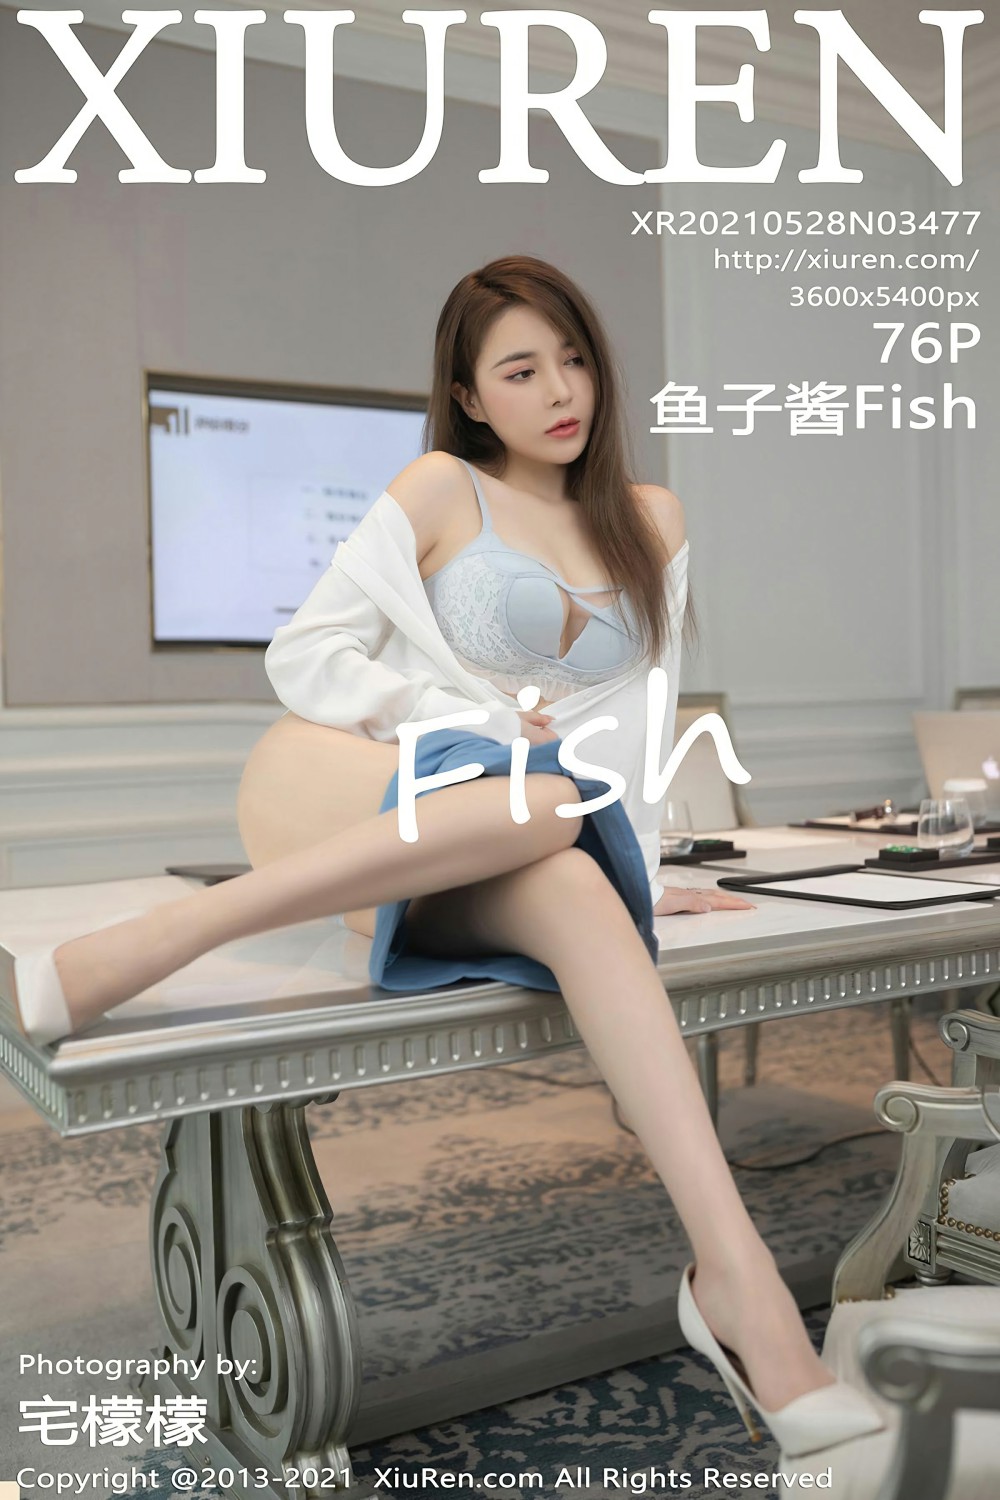 [XiuRen秀人网] No.3477 鱼子酱Fish1张